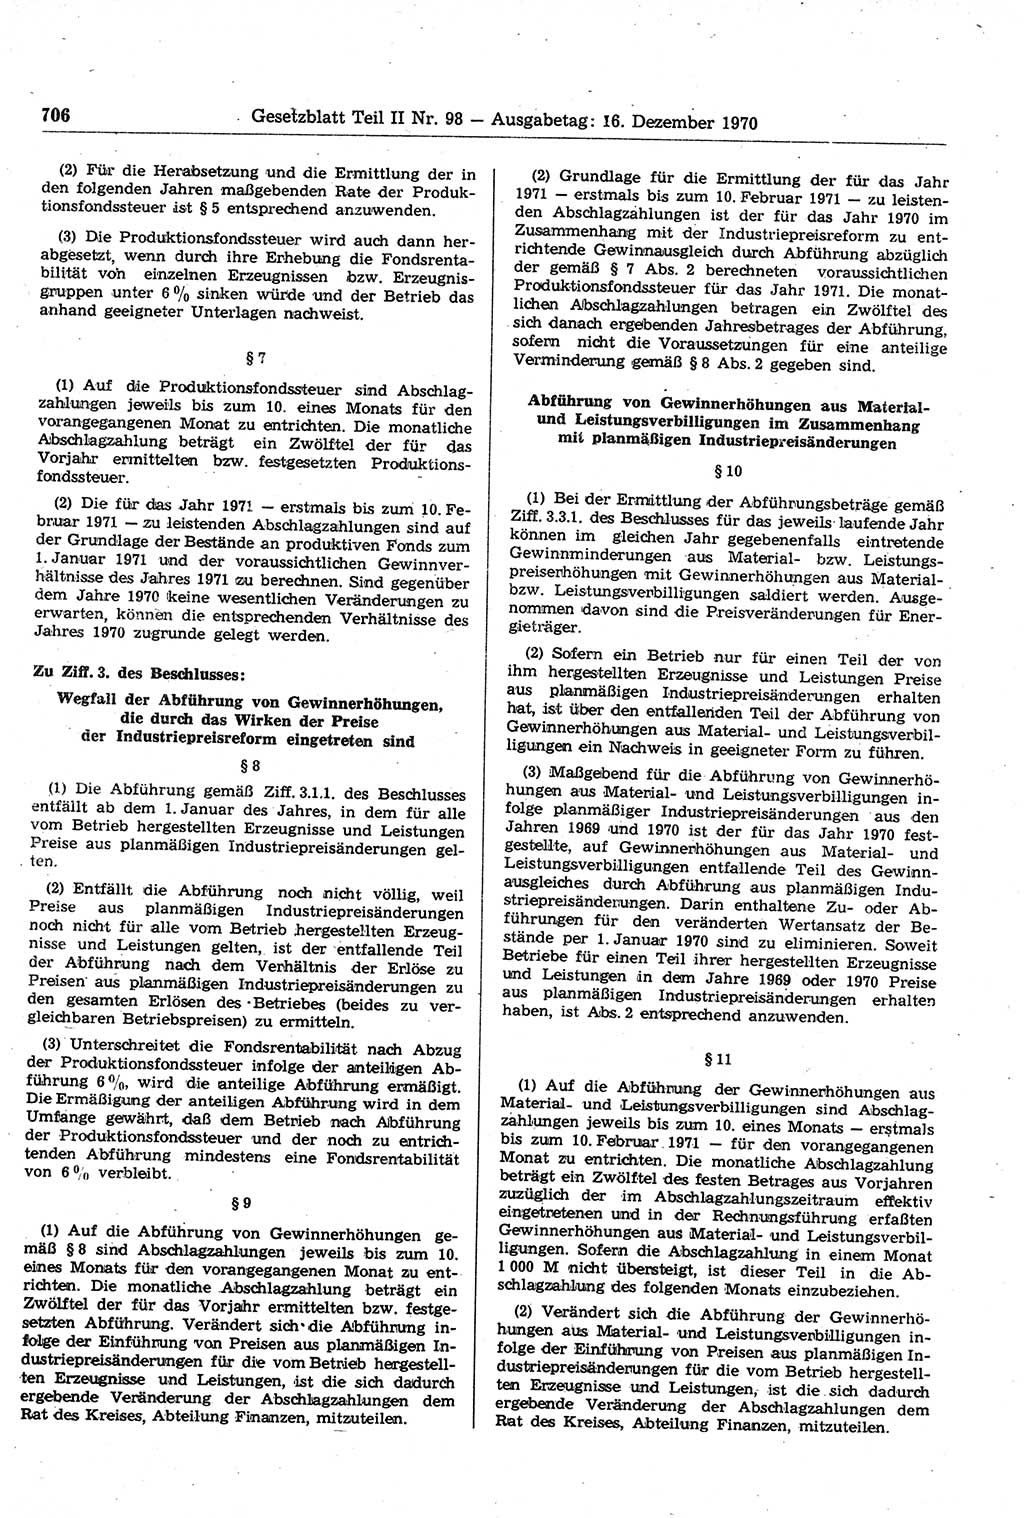 Gesetzblatt (GBl.) der Deutschen Demokratischen Republik (DDR) Teil ⅠⅠ 1970, Seite 706 (GBl. DDR ⅠⅠ 1970, S. 706)